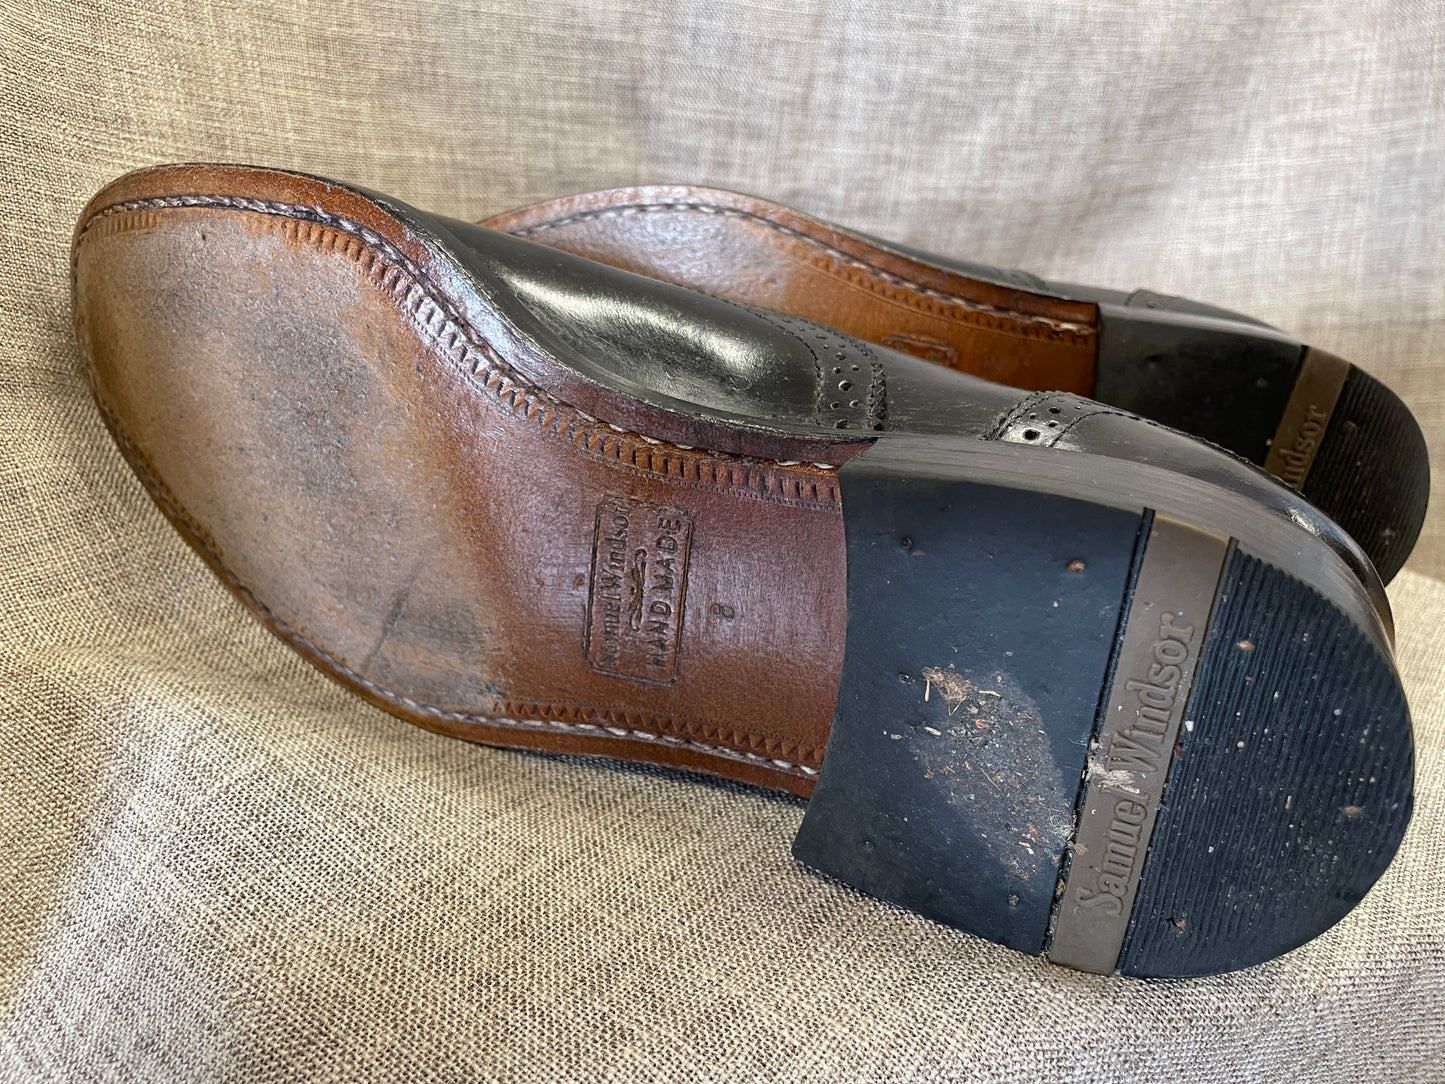 Samuel Windsor Black Leather Brogue Shoes UK 8